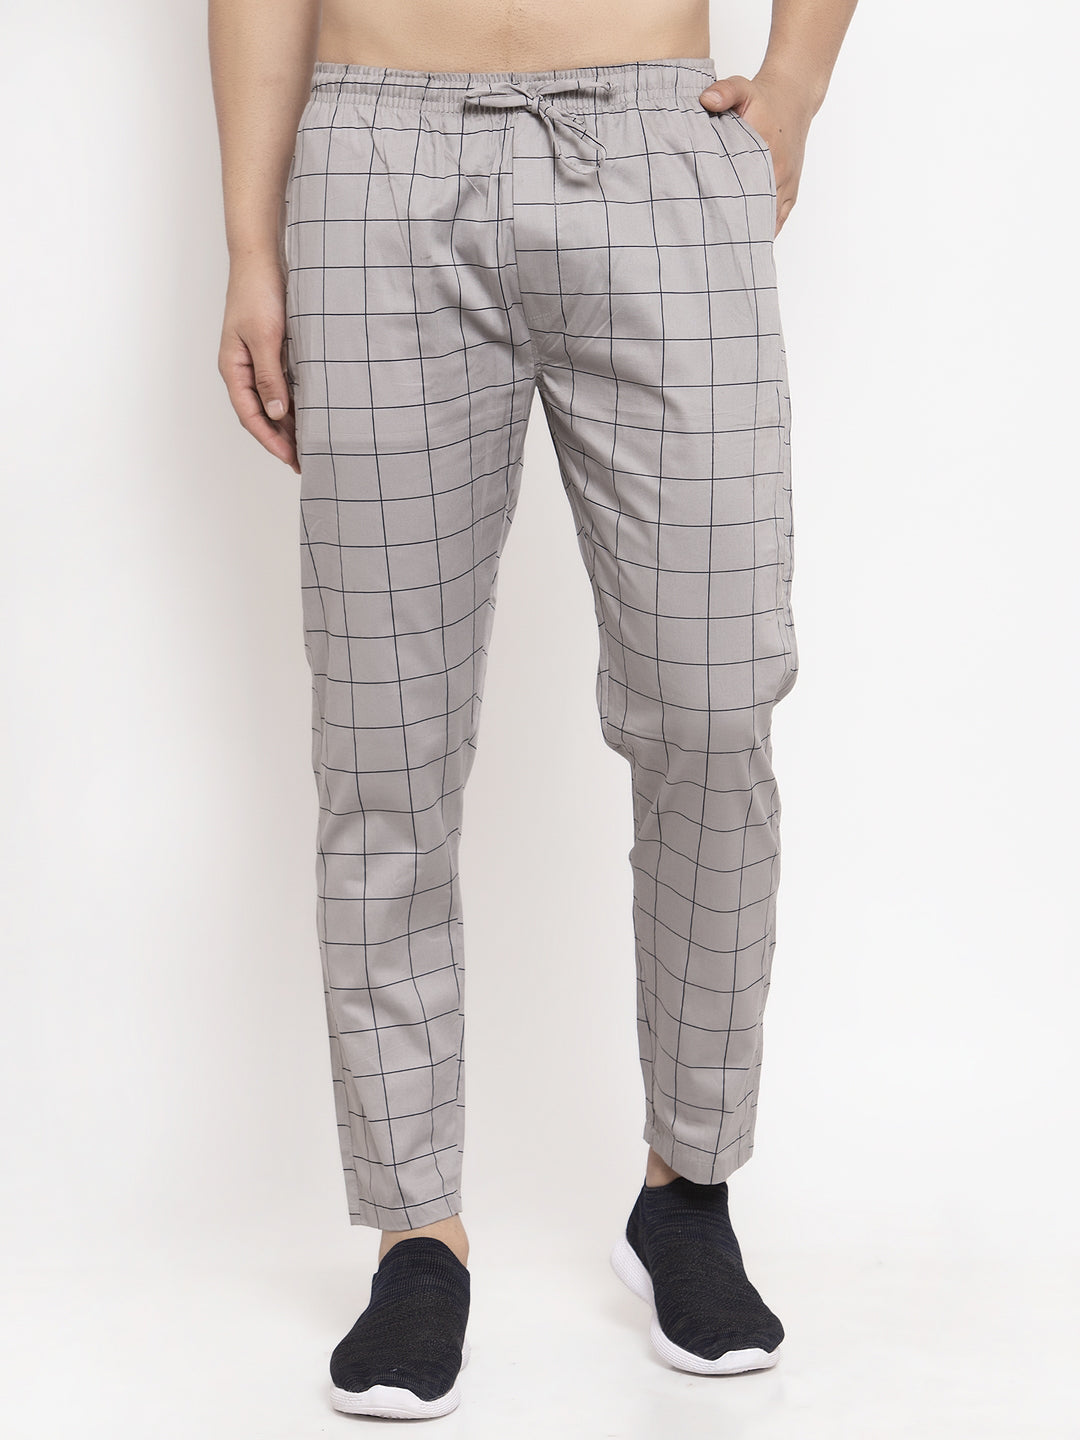 Jainish Men's Grey Checked Cotton Track Pants ( JOG 012Grey ) - Distacart